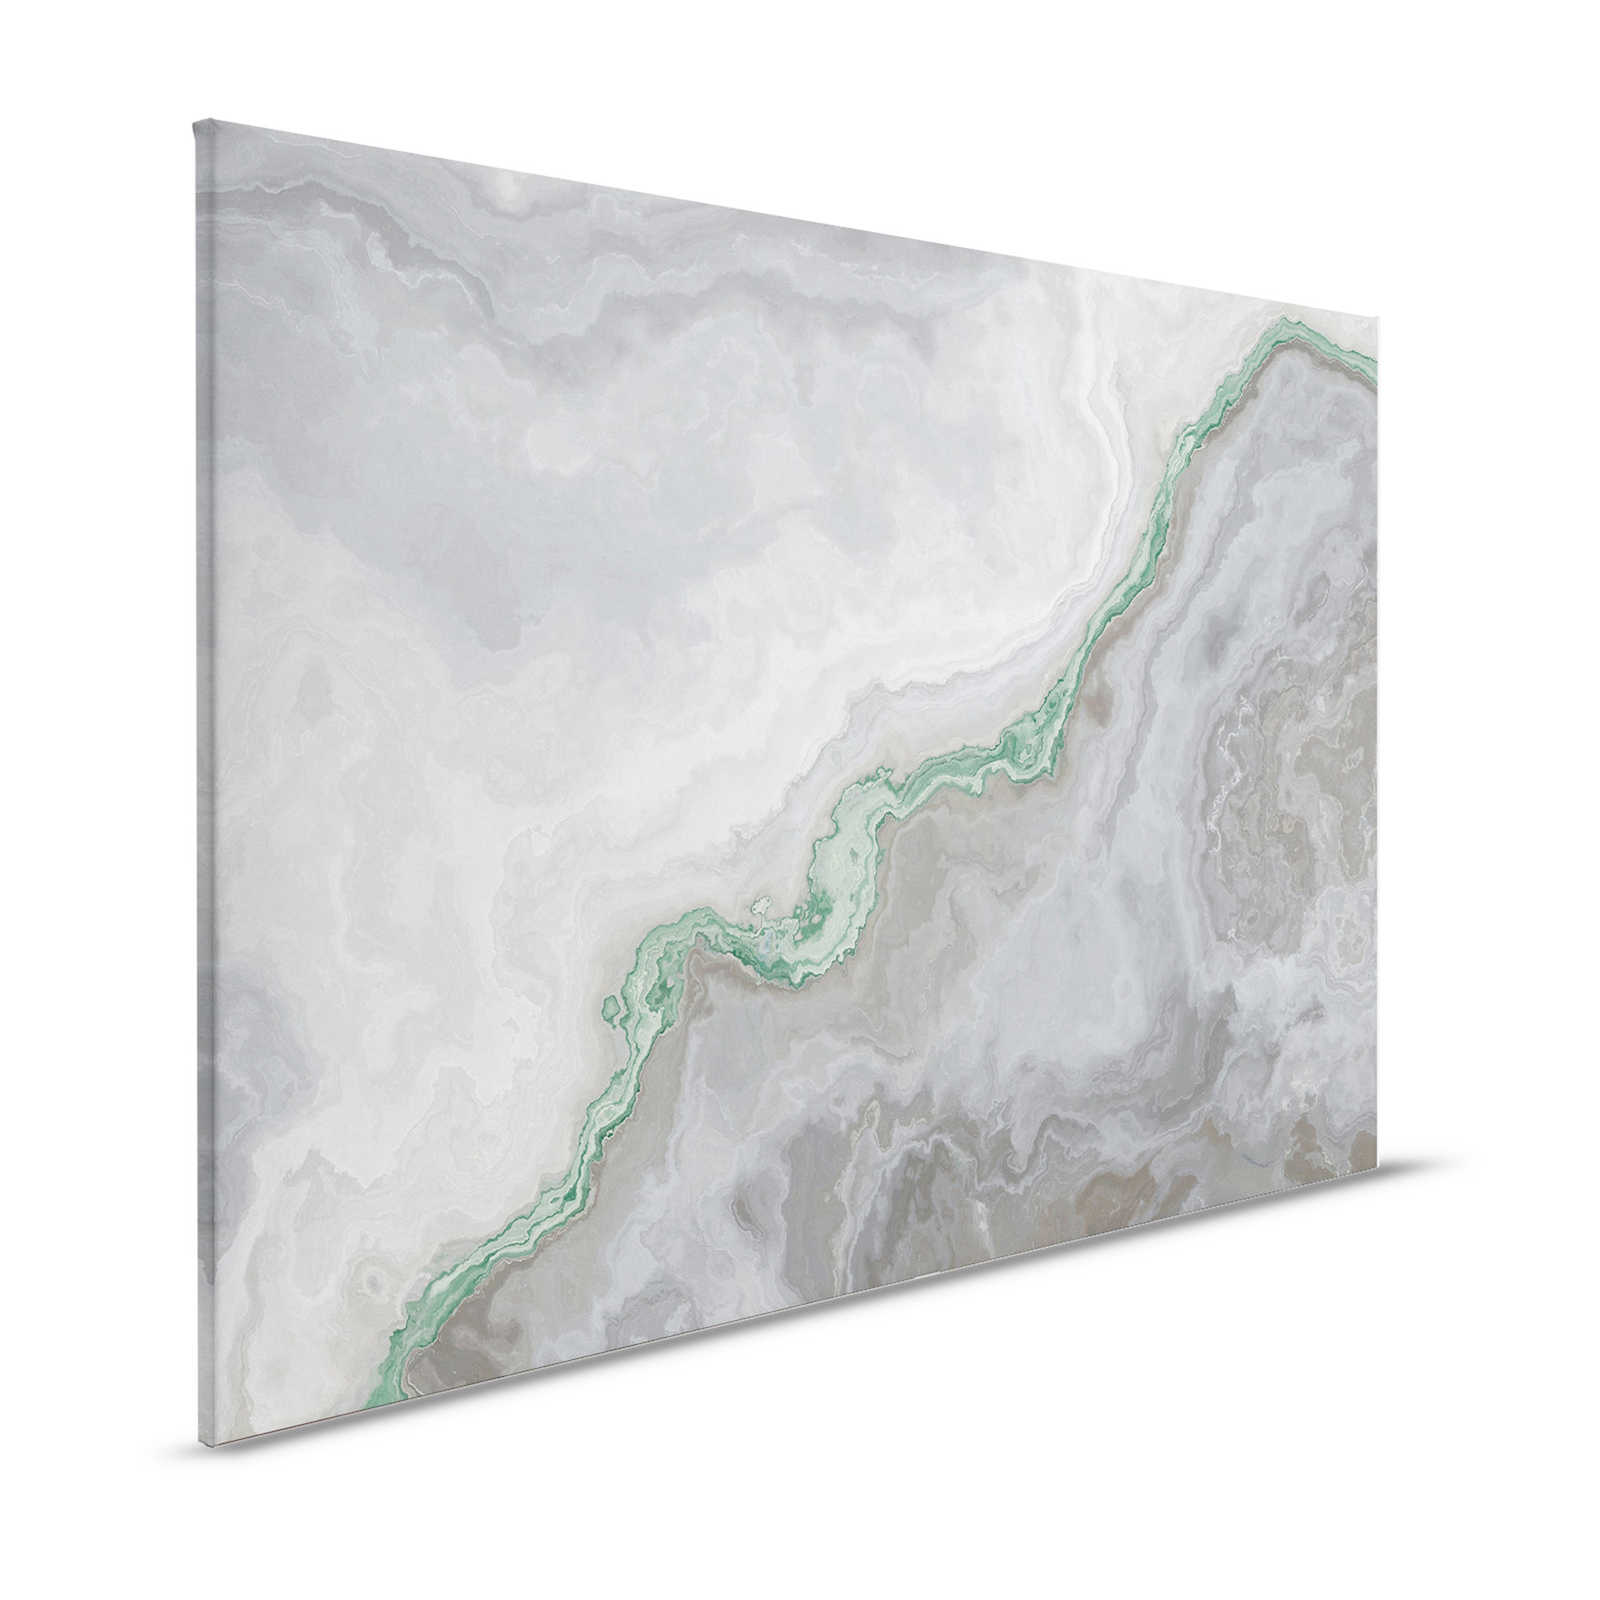 Quadro su tela al quarzo con marmorizzazione - 1,20 m x 0,80 m
